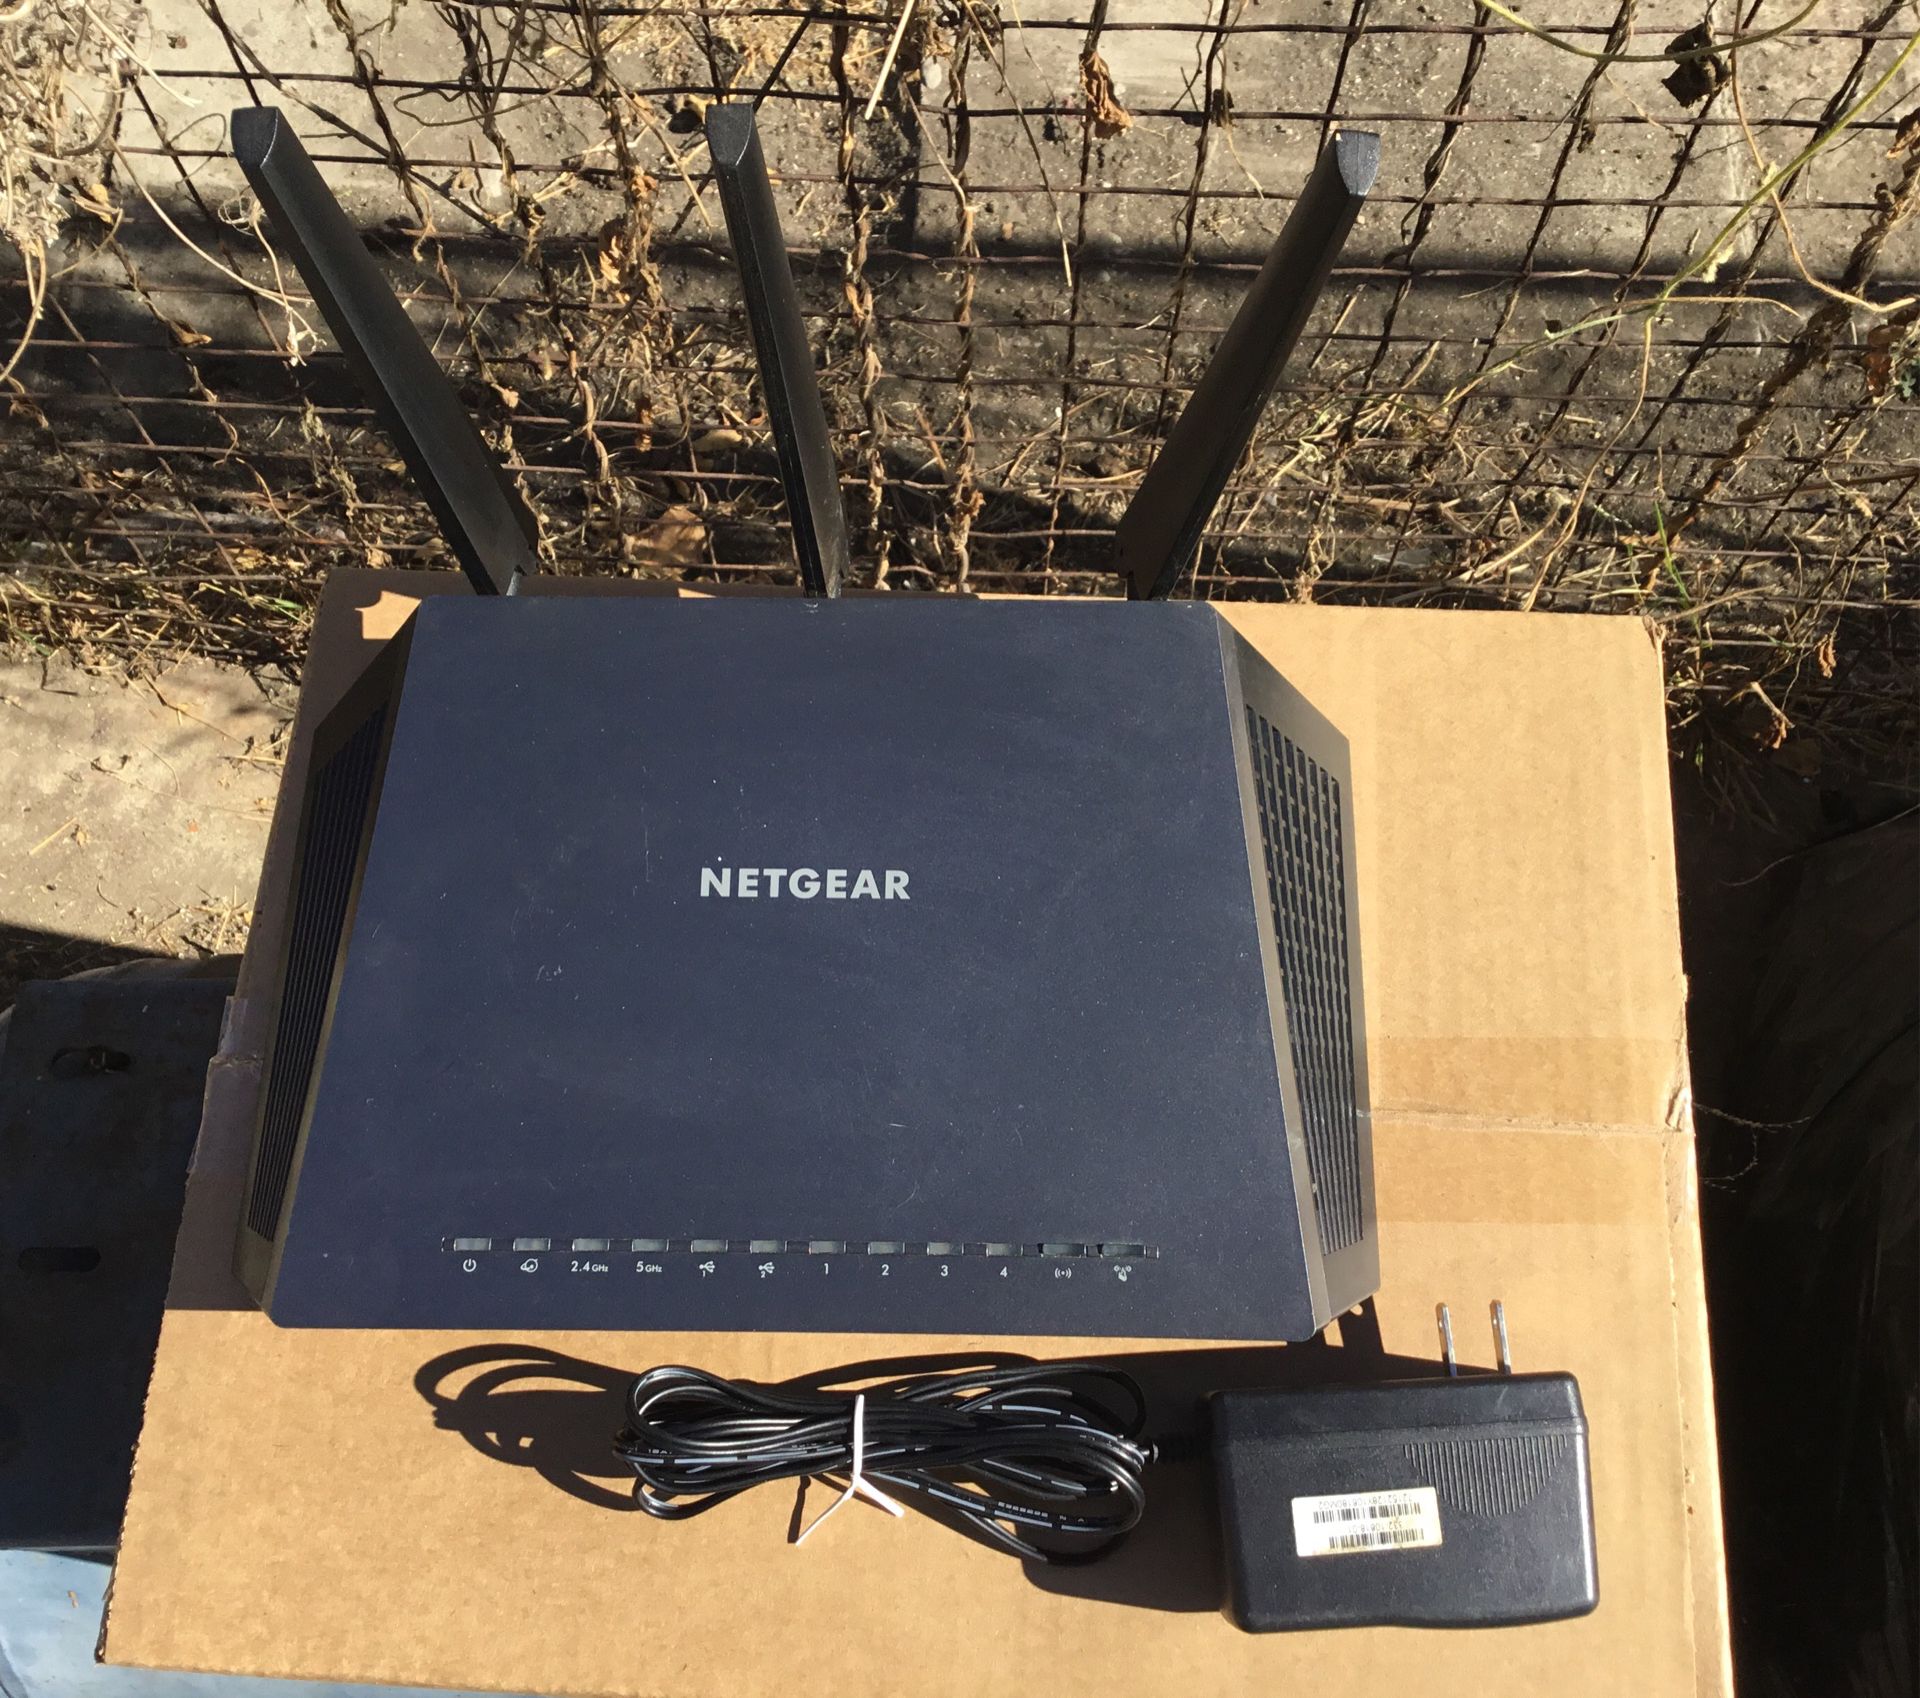 Netgear Nighthawk AC1900 Smart WiFi Router Model R7000